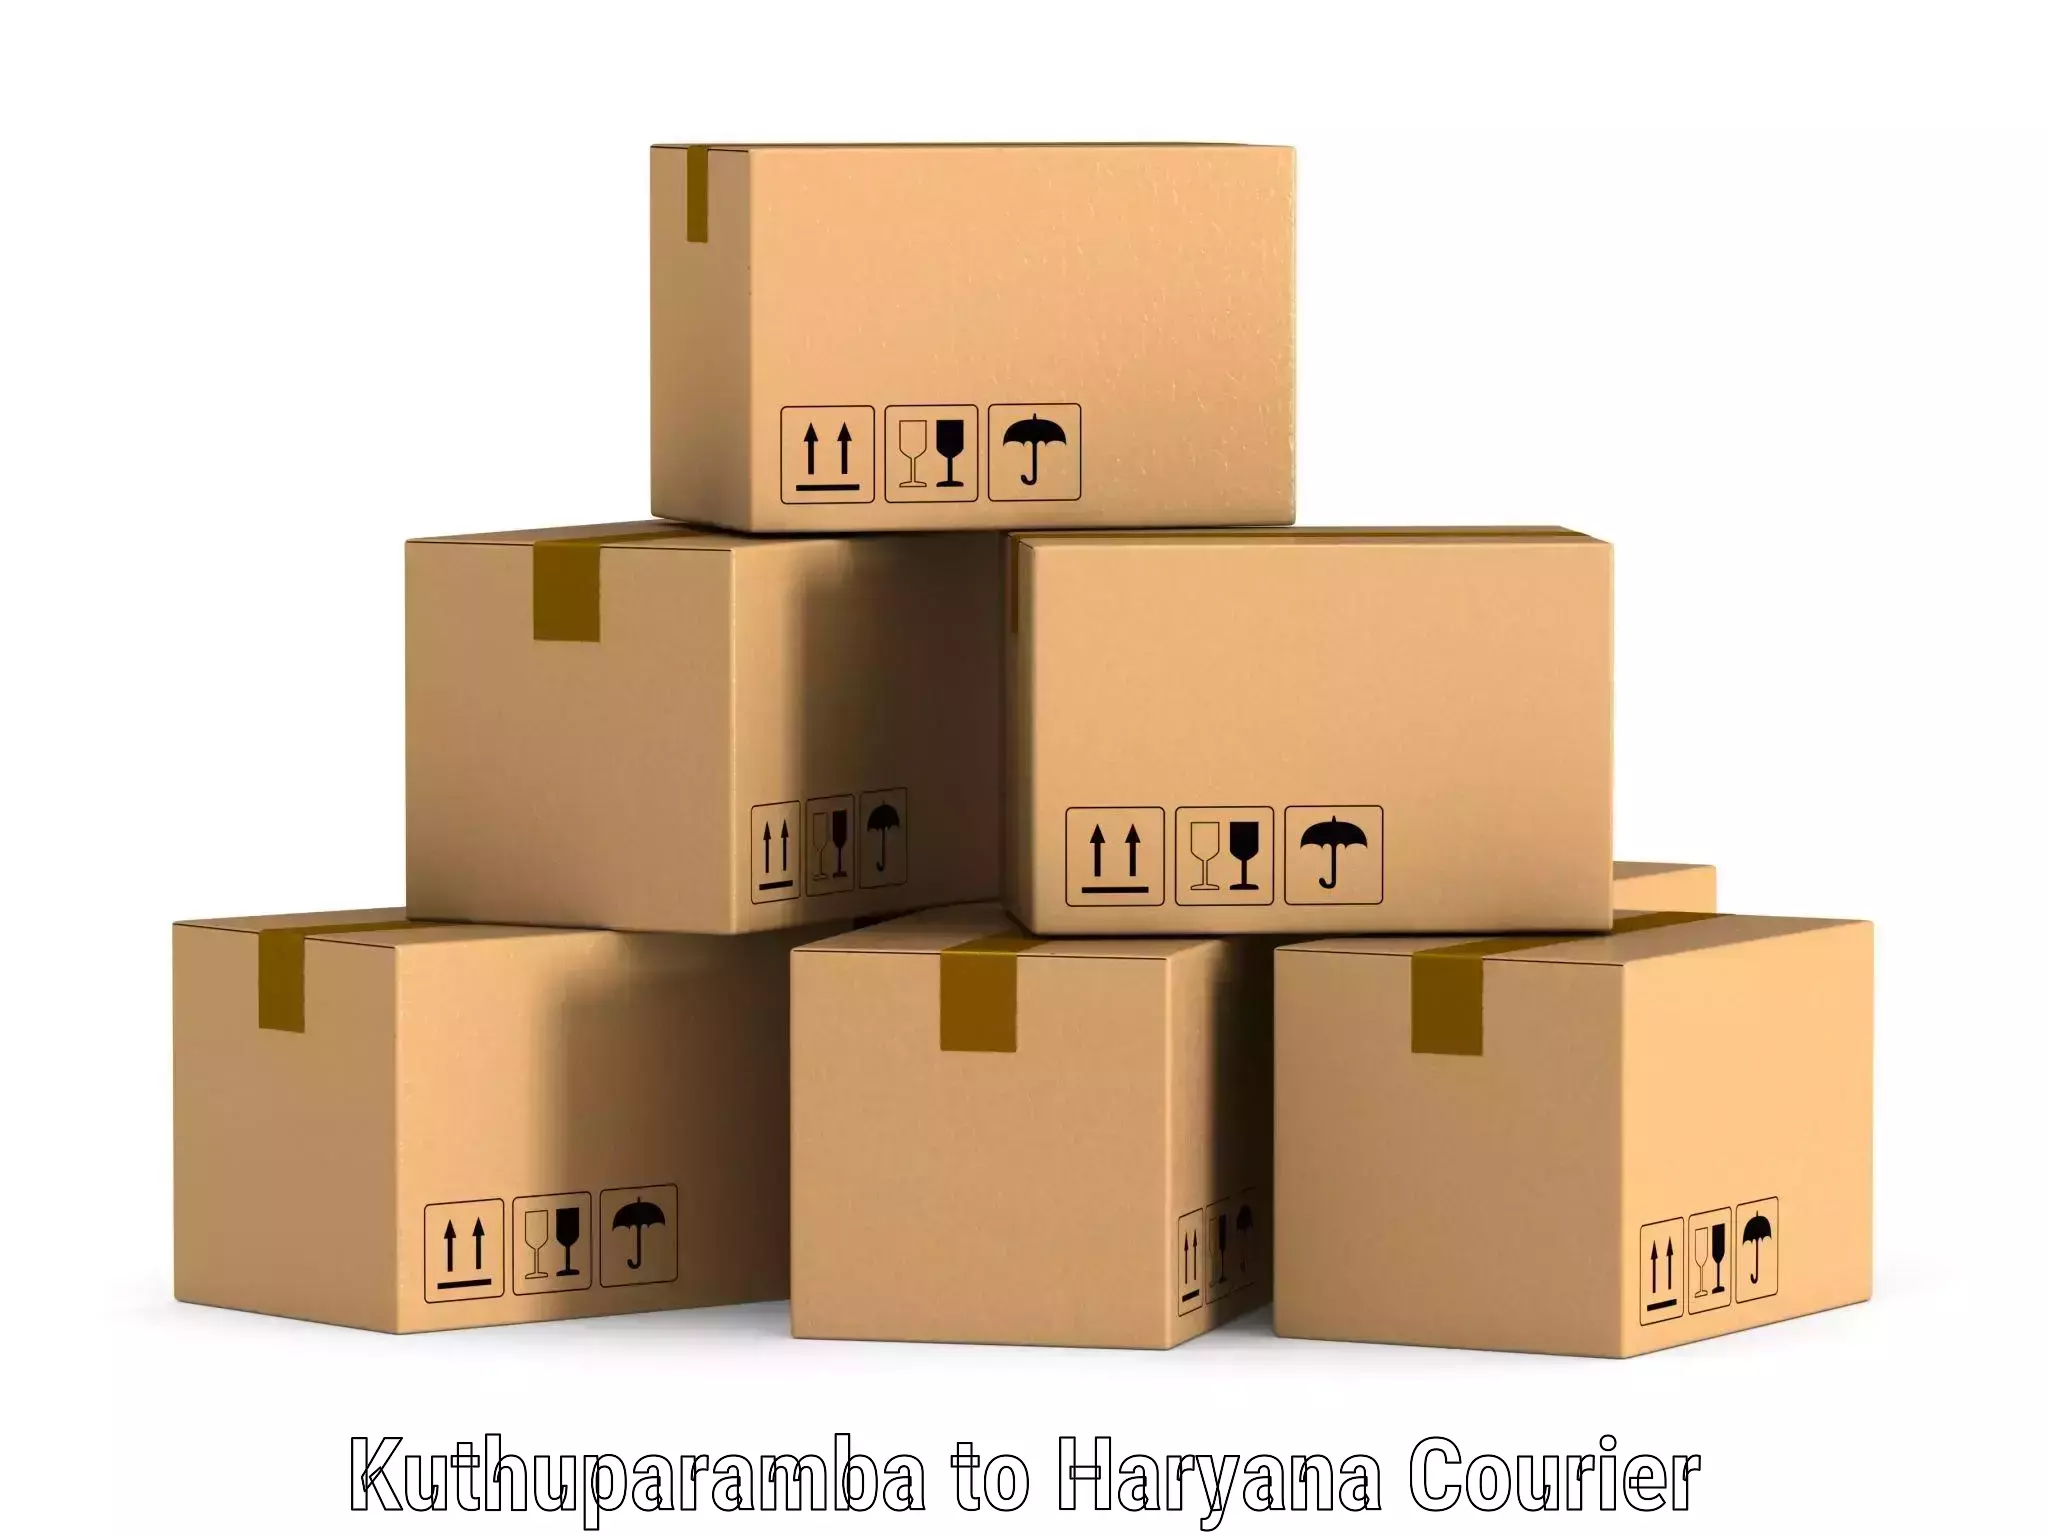 Comprehensive shipping network in Kuthuparamba to Gurugram